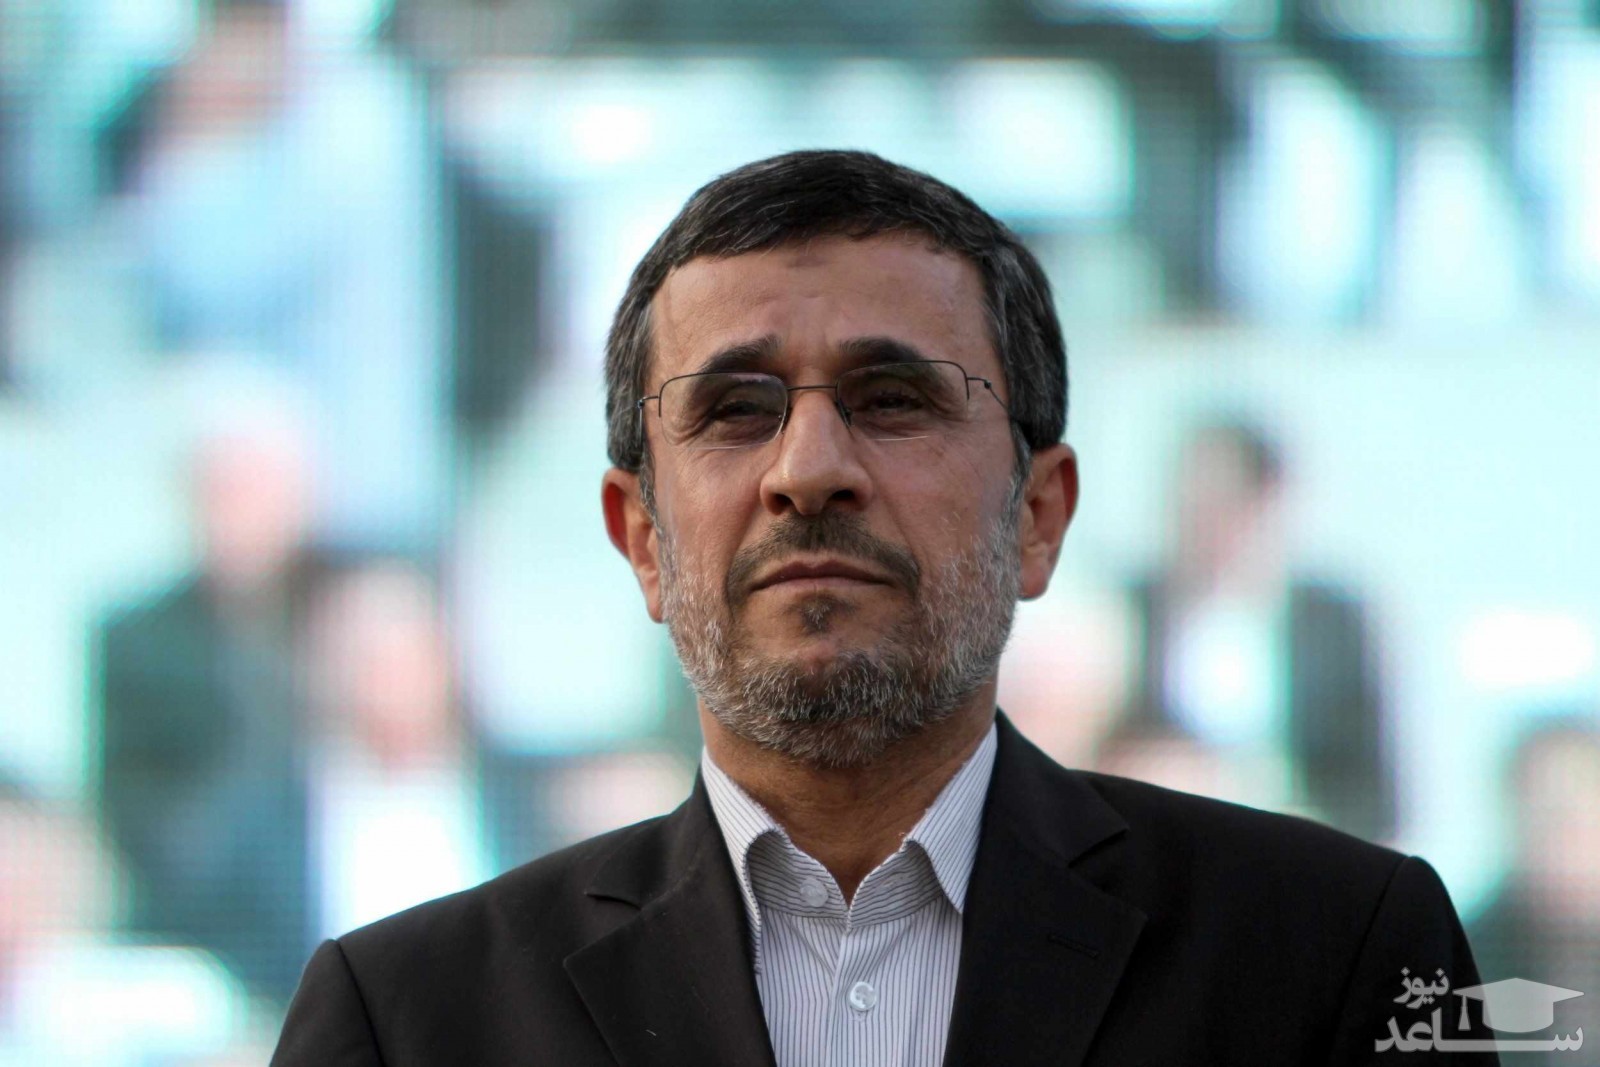 عکس جنجالی و دیده نشده از محمود احمدی نژاد با عبا و شال عربی